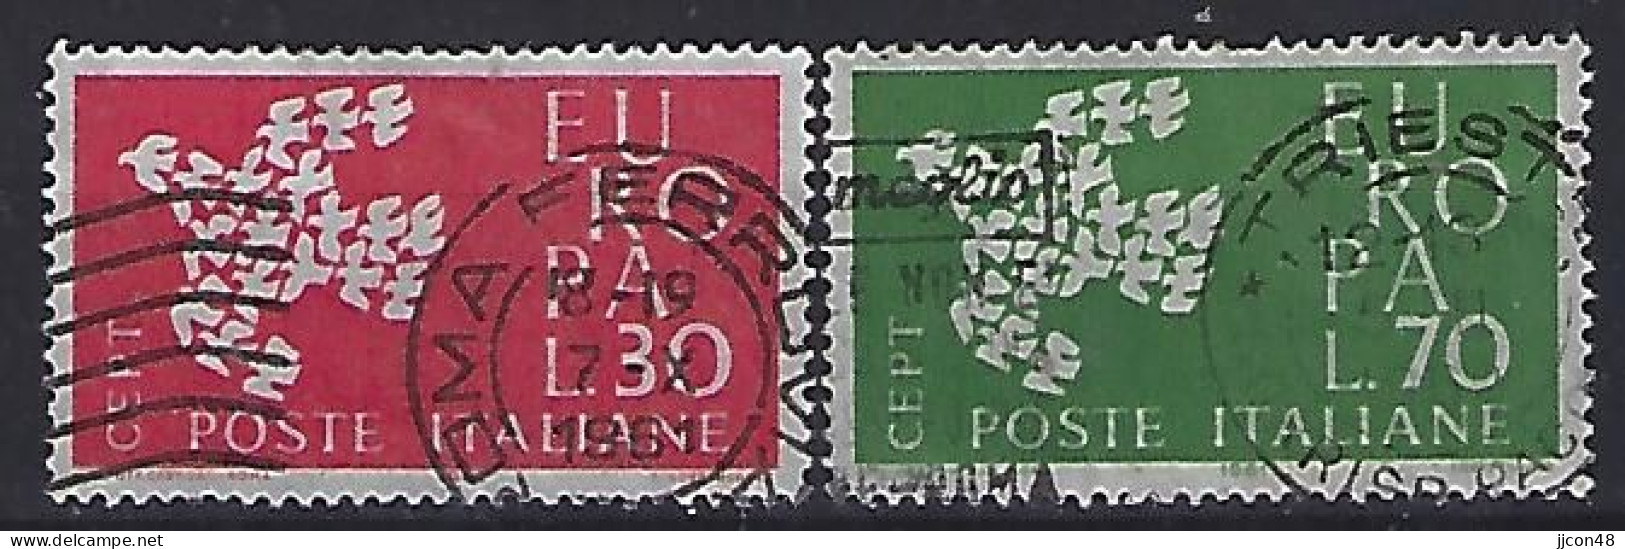 Italy 1961  Europa  (o) Mi.1113-1114 - 1961-70: Oblitérés